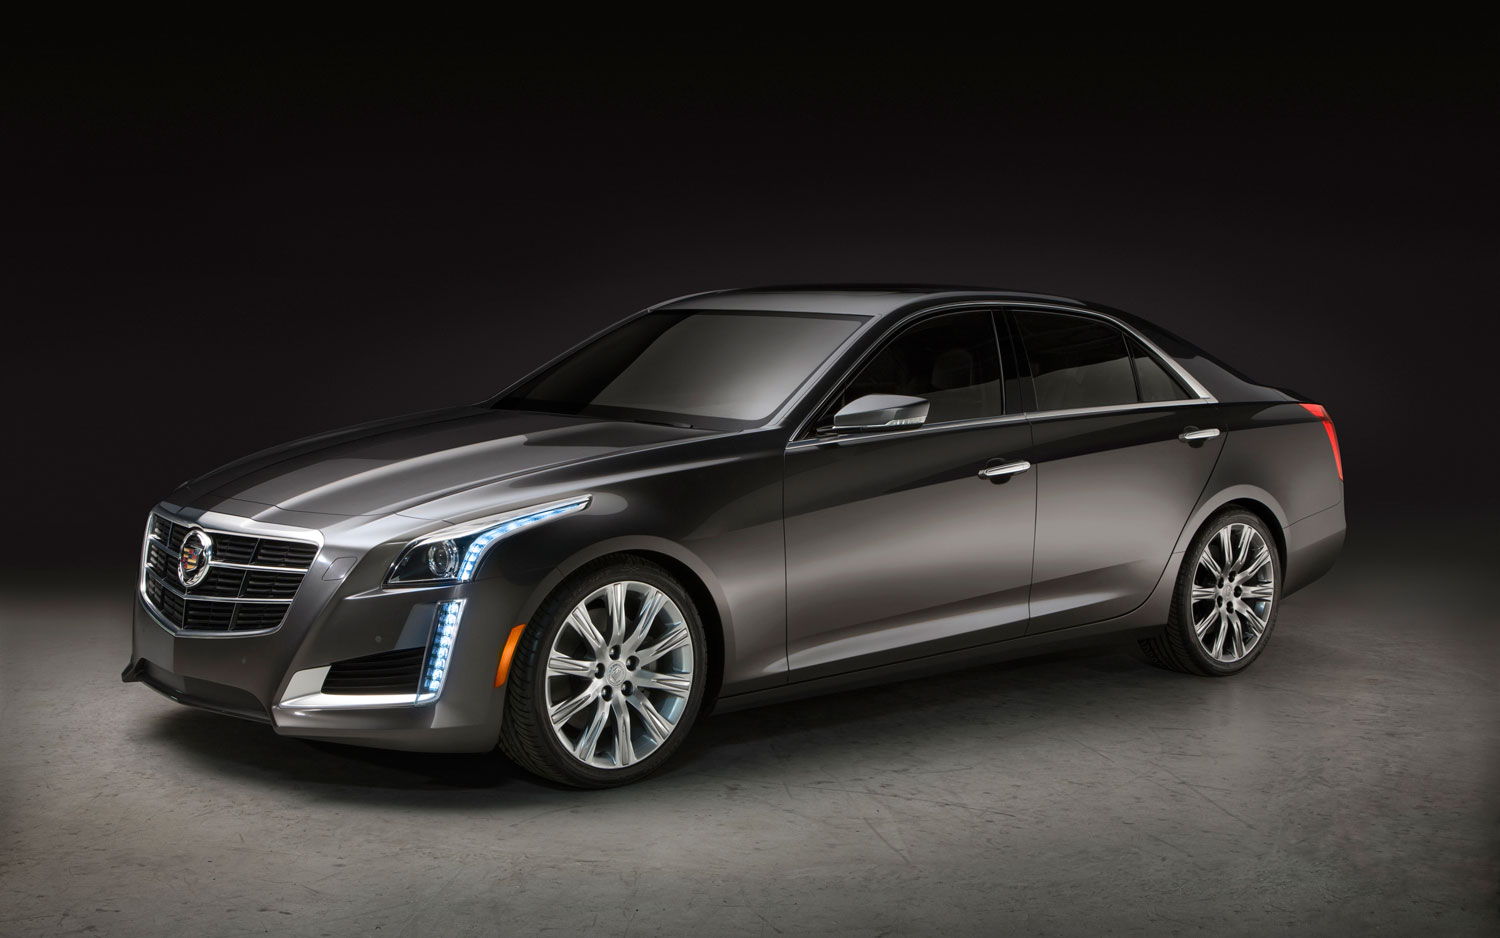 2014 Cadillac CTS Sedan | New cars reviews